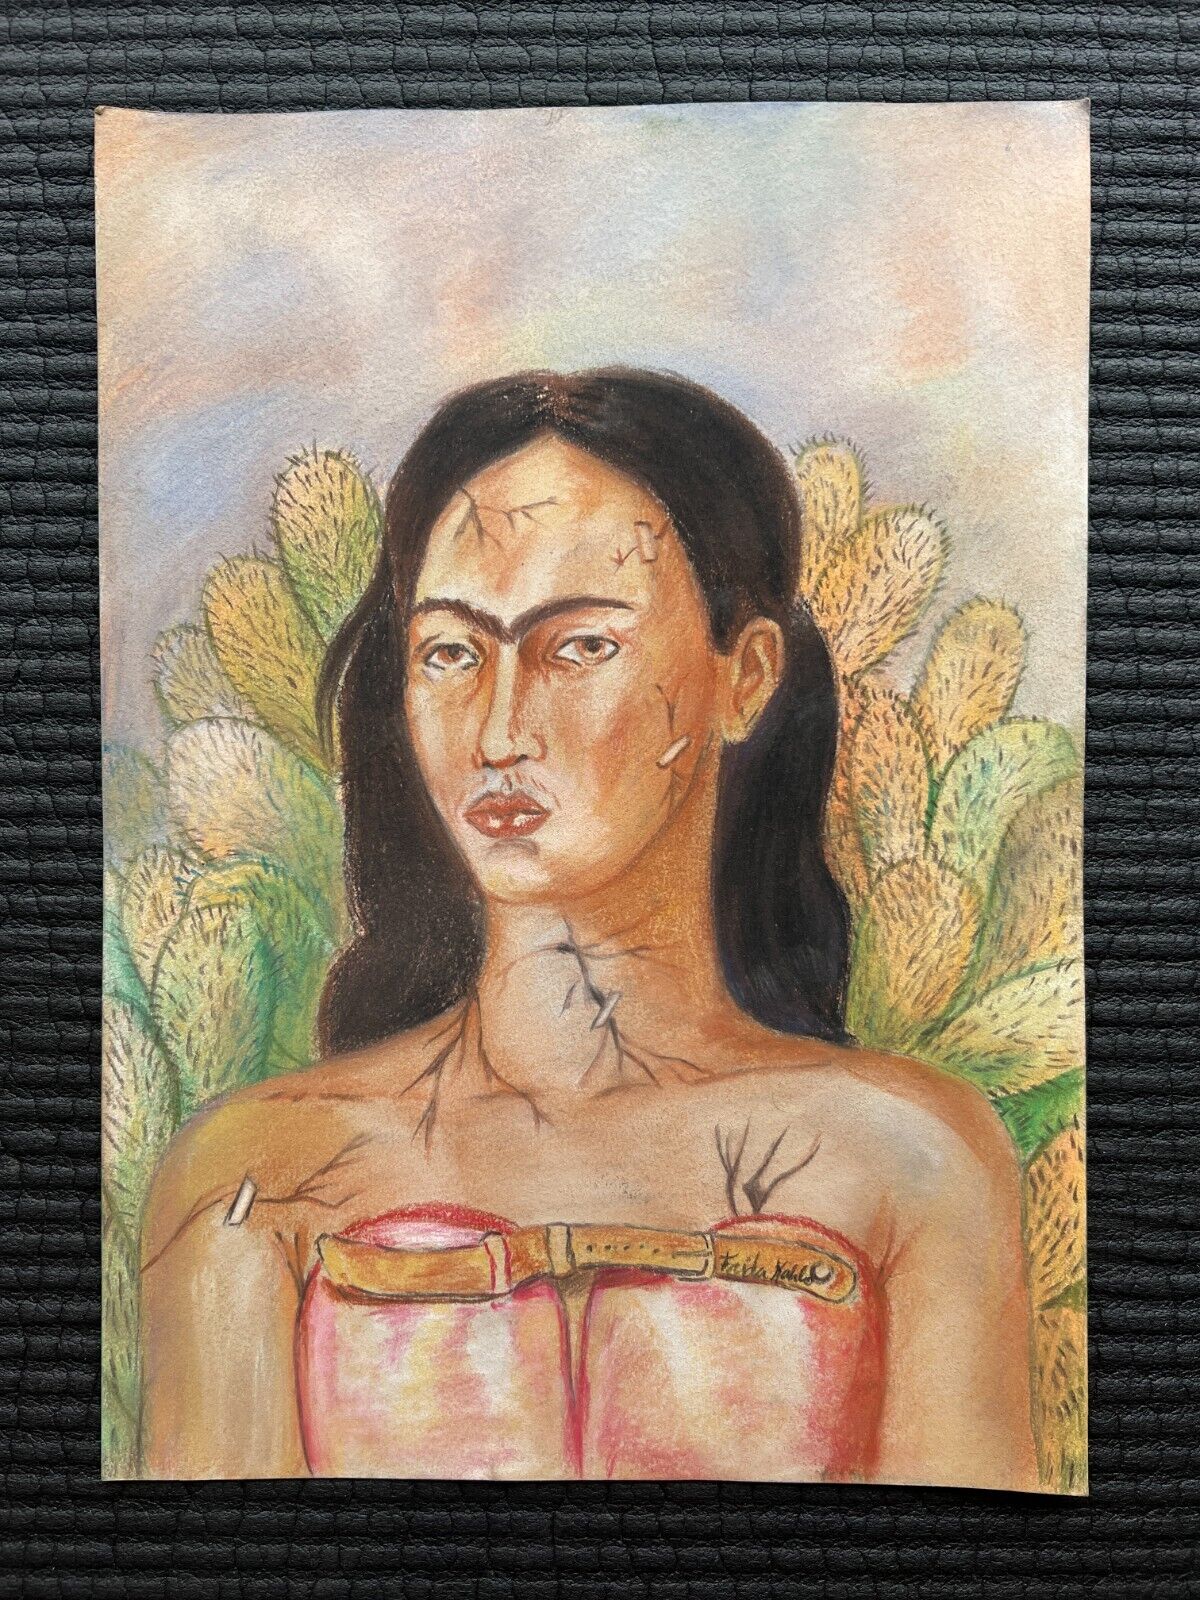 Frida Kahlo Drawing on paper (Handmade) signed and stamped vtg art